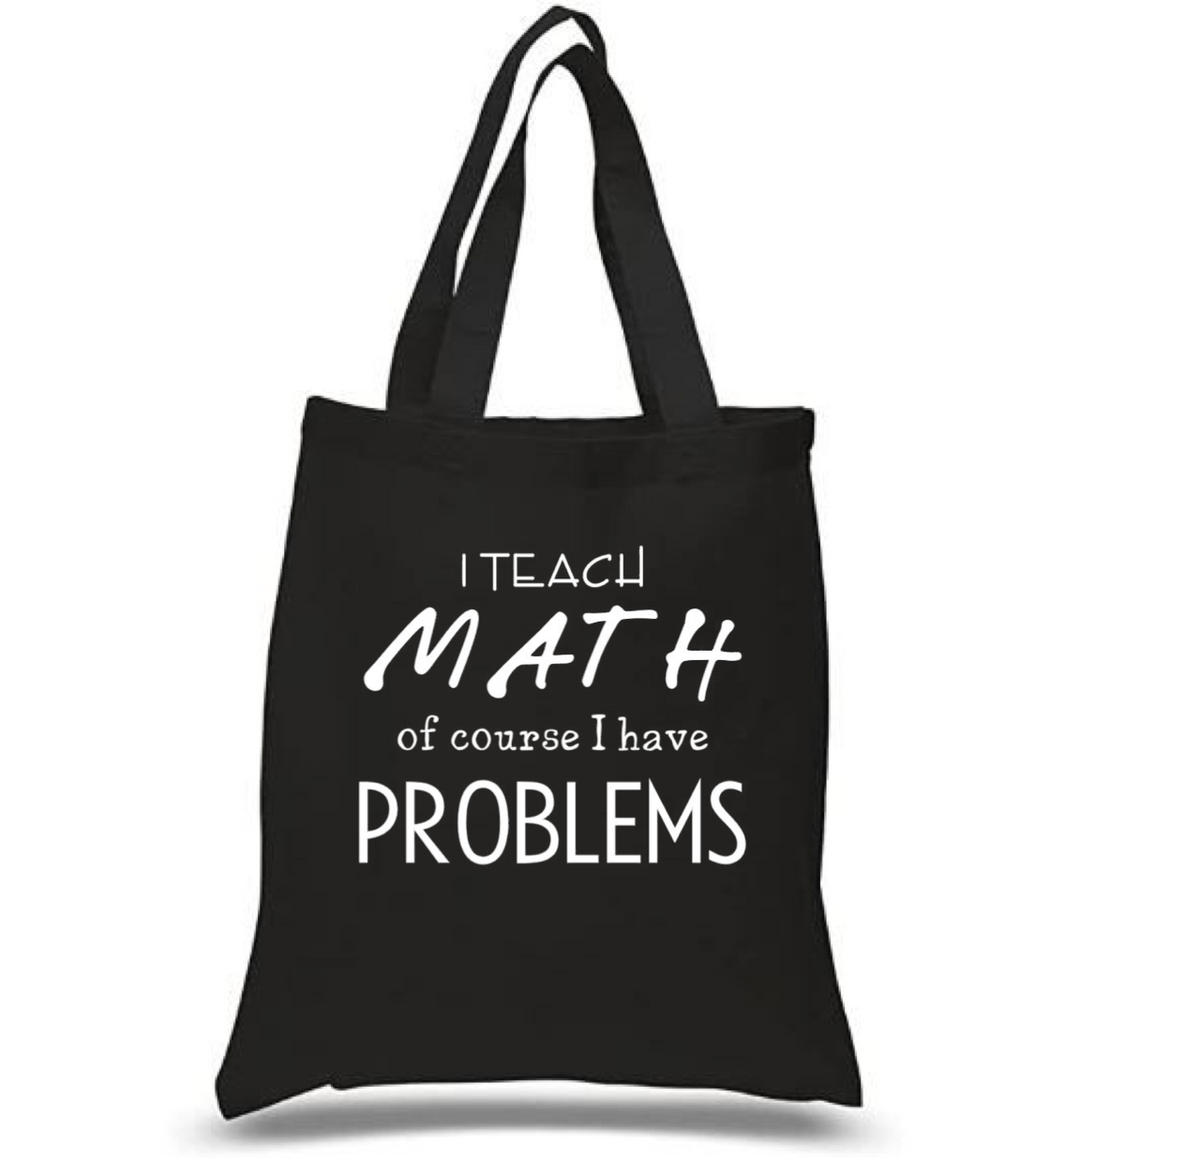 Tote Bag: I Teach Math Problems